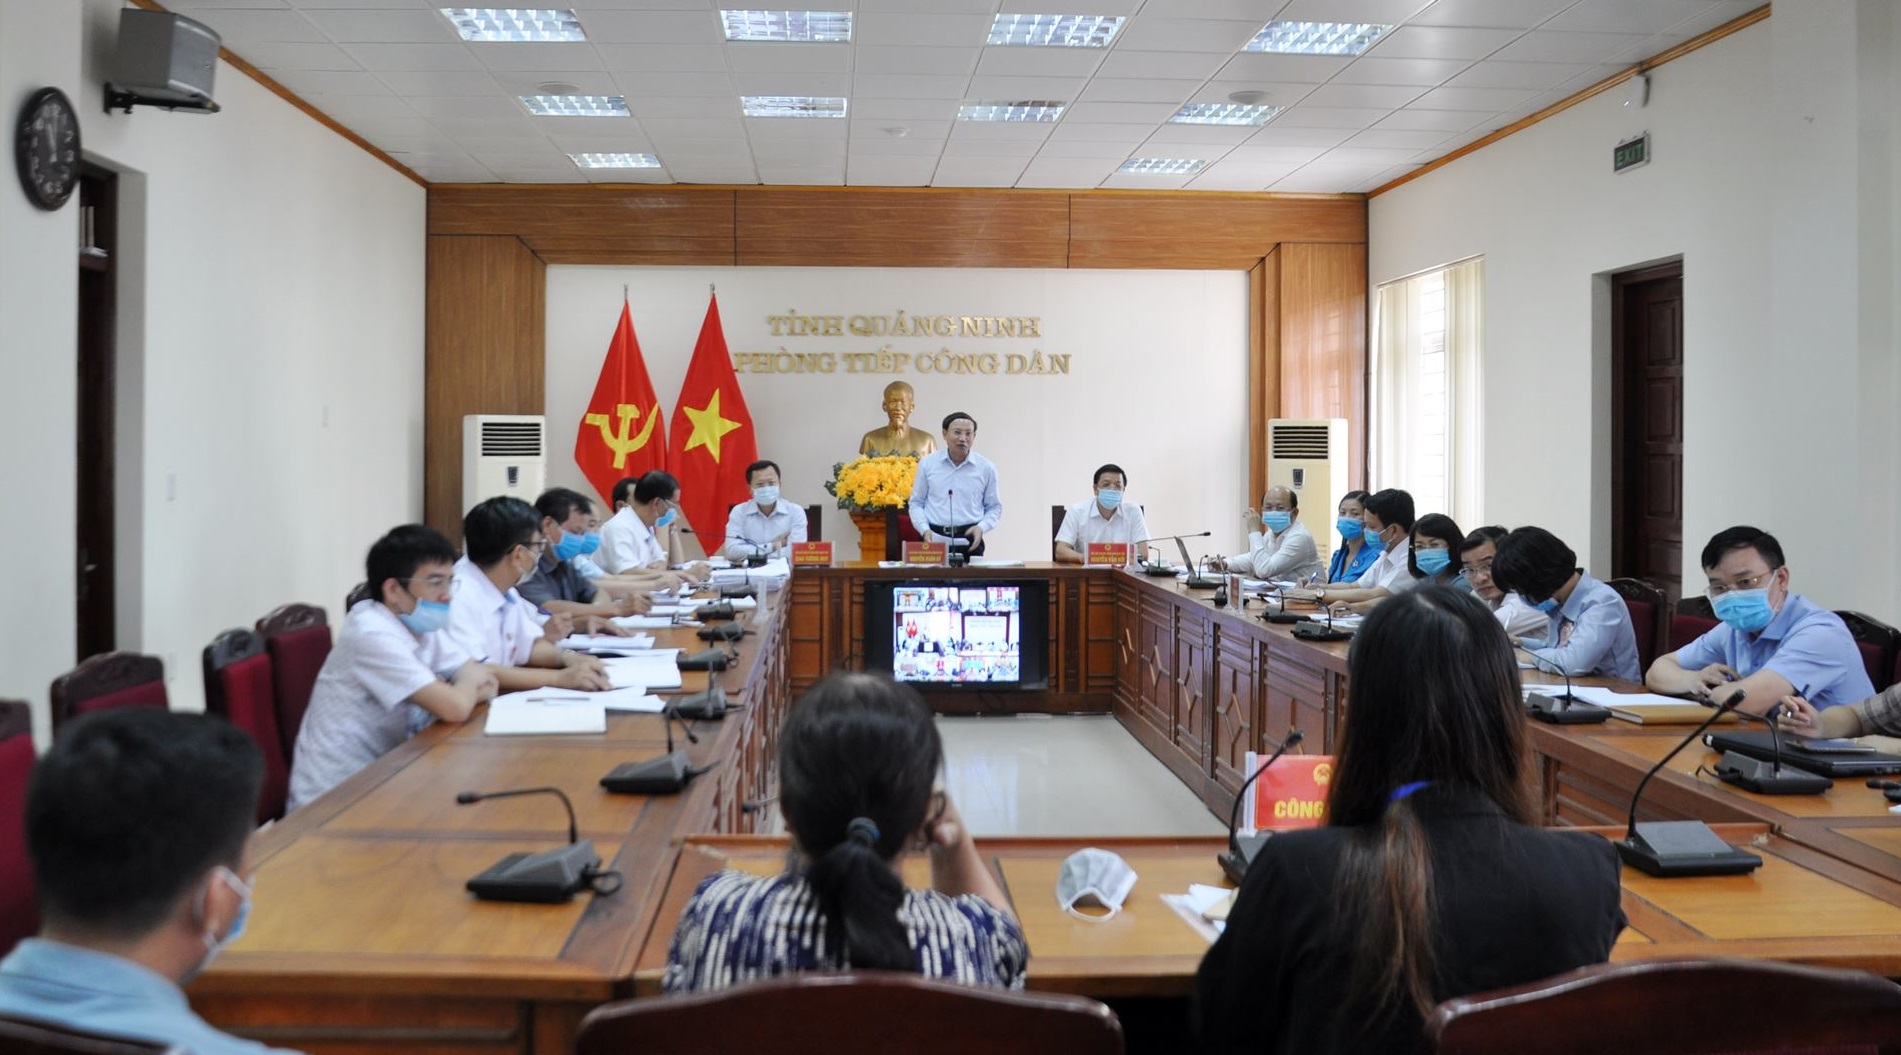 Đồng chí Nguyễn Xuân Ký, Bí thư Tỉnh ủy, Chủ tịch HĐND tỉnh, chủ trì buổi tiếp công dân.